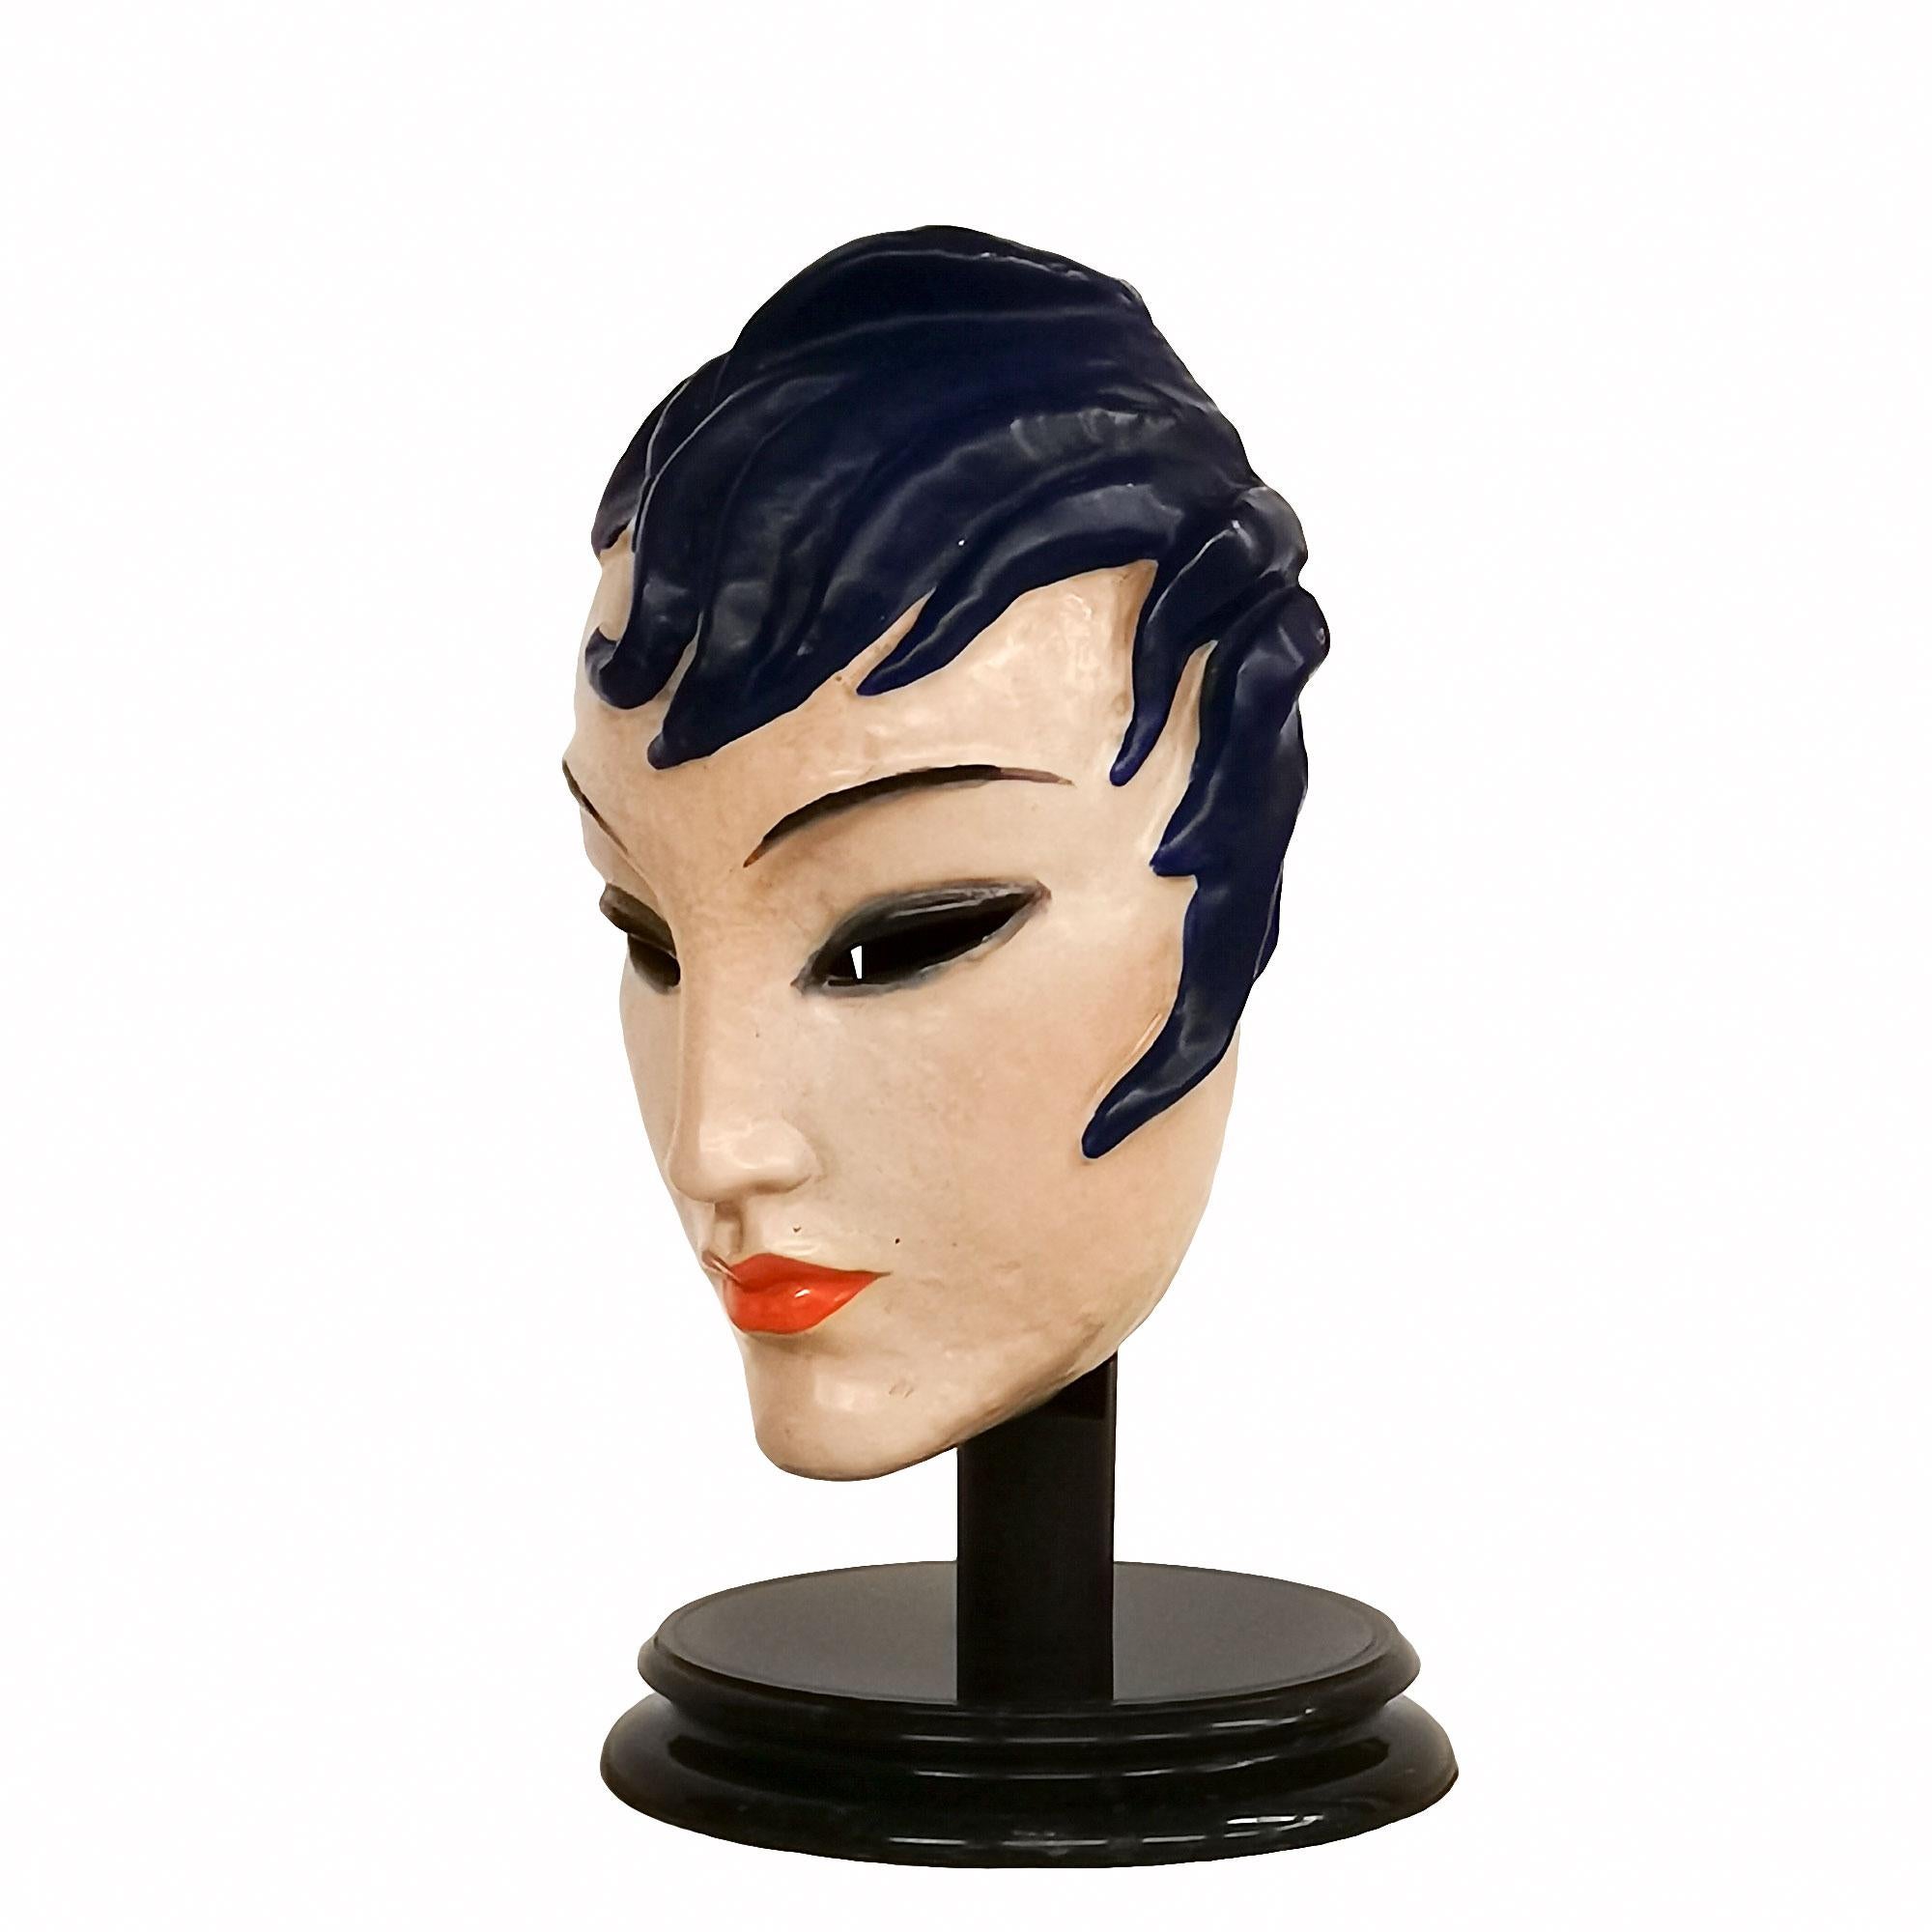 Masque de femme Art Déco, en céramique émaillée avec un support en bois et une base en marbre.
Production Keramos
Signé 